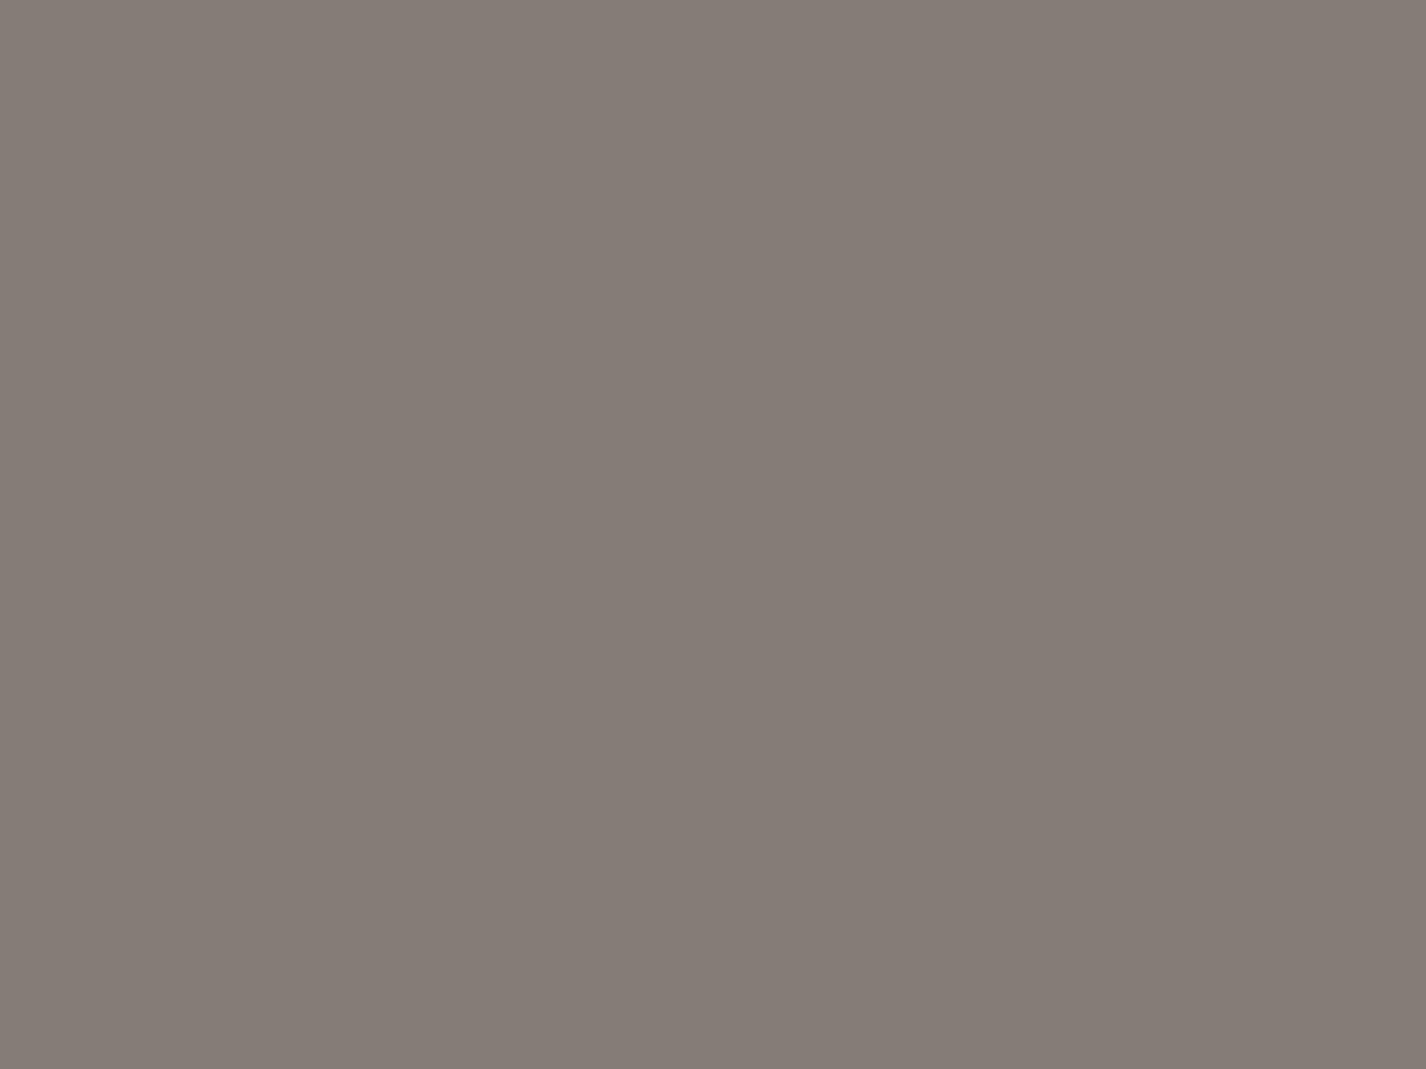 Илларион Прянишников. Погорельцы (фрагмент). 1871. Новосибирский государственный художественный музей, Новосибирск